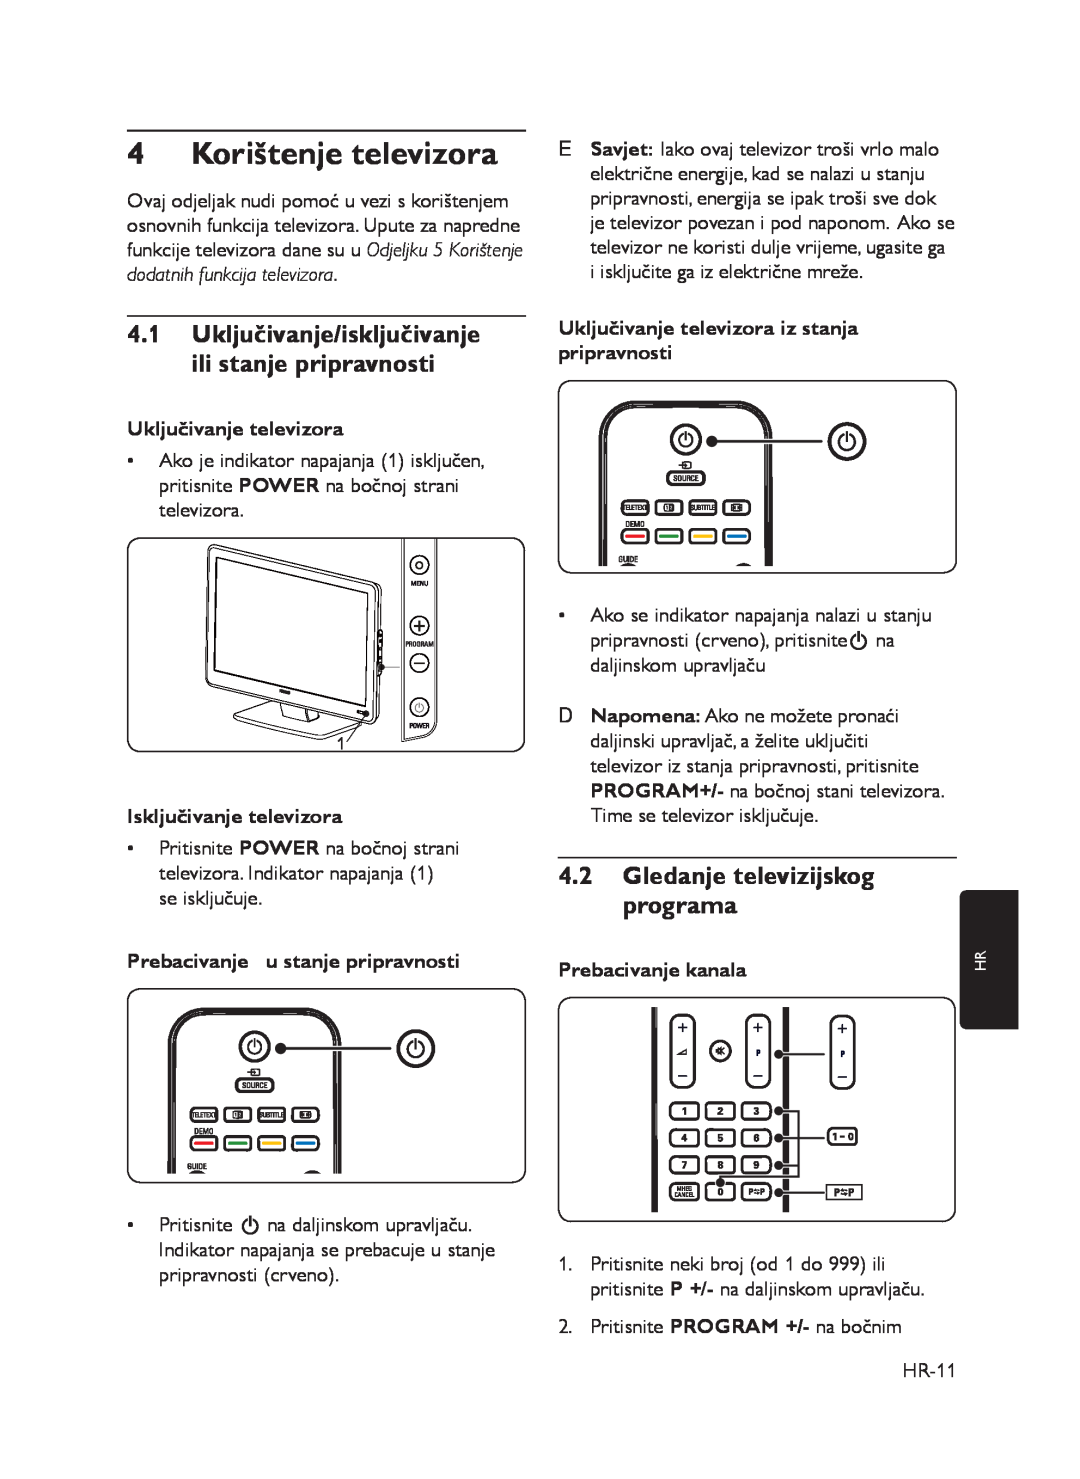 Philips 72-T540M5-X411C Korištenje televizora, Uključivanje/isključivanje ili stanje pripravnosti, Uključivanje televizora 